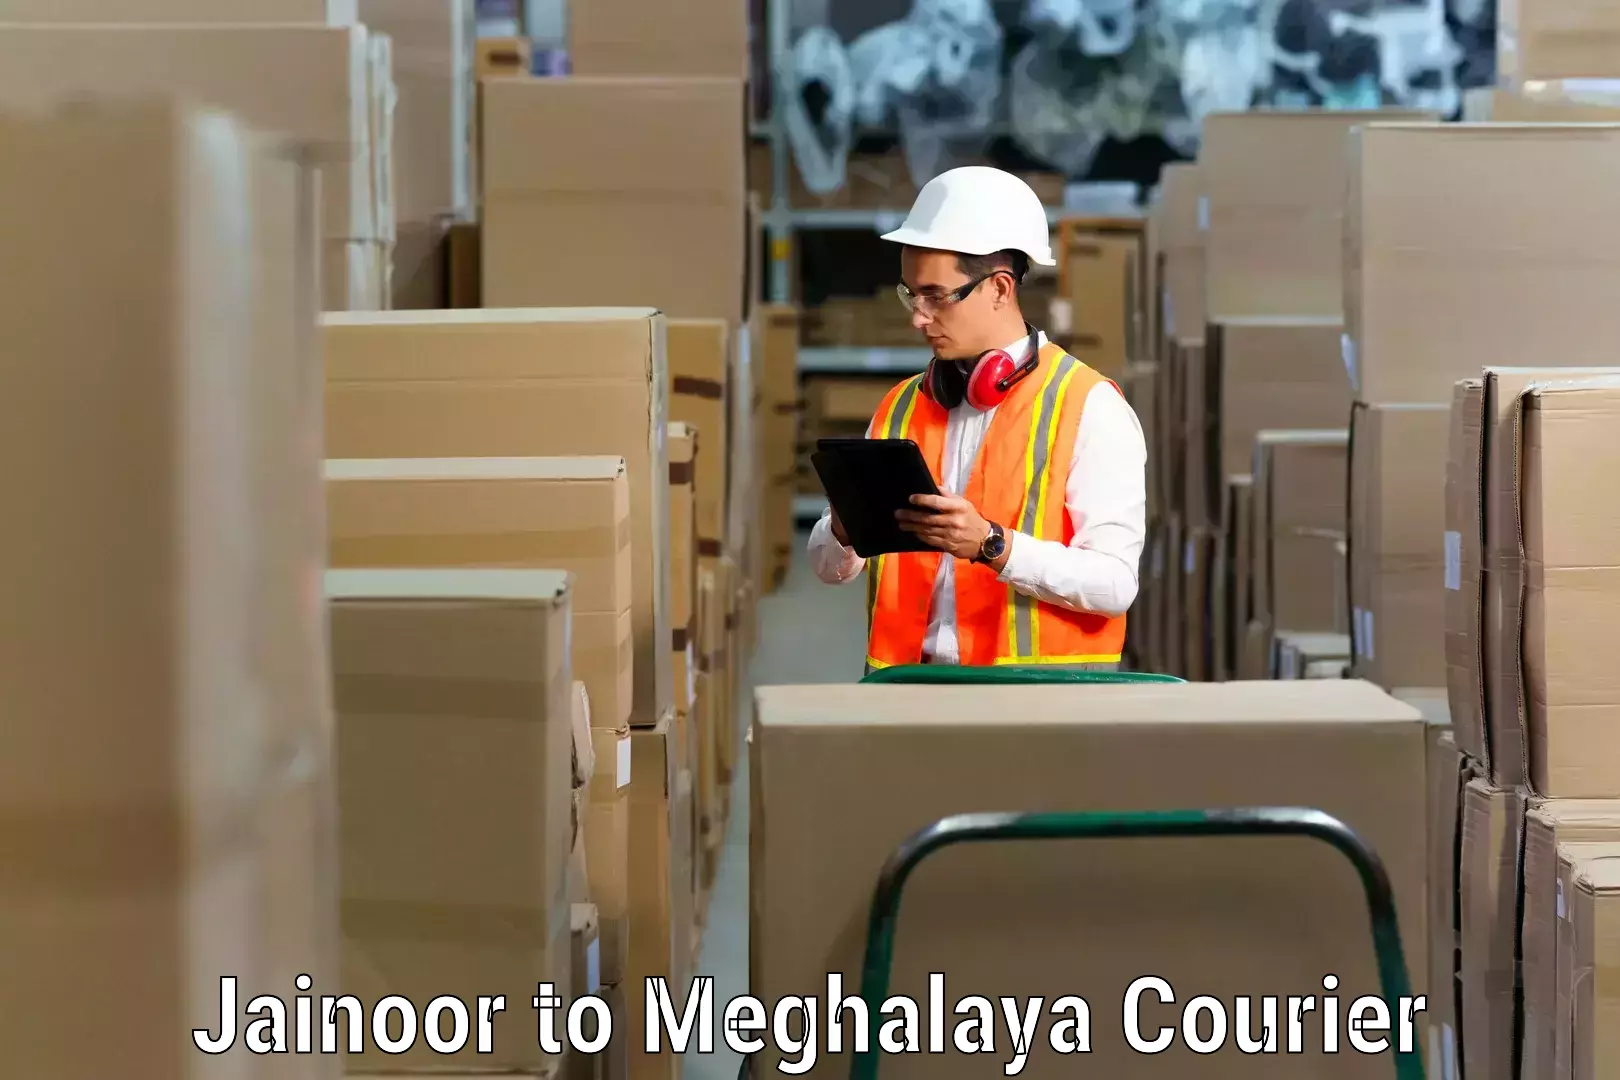 Professional furniture movers Jainoor to Phulbari